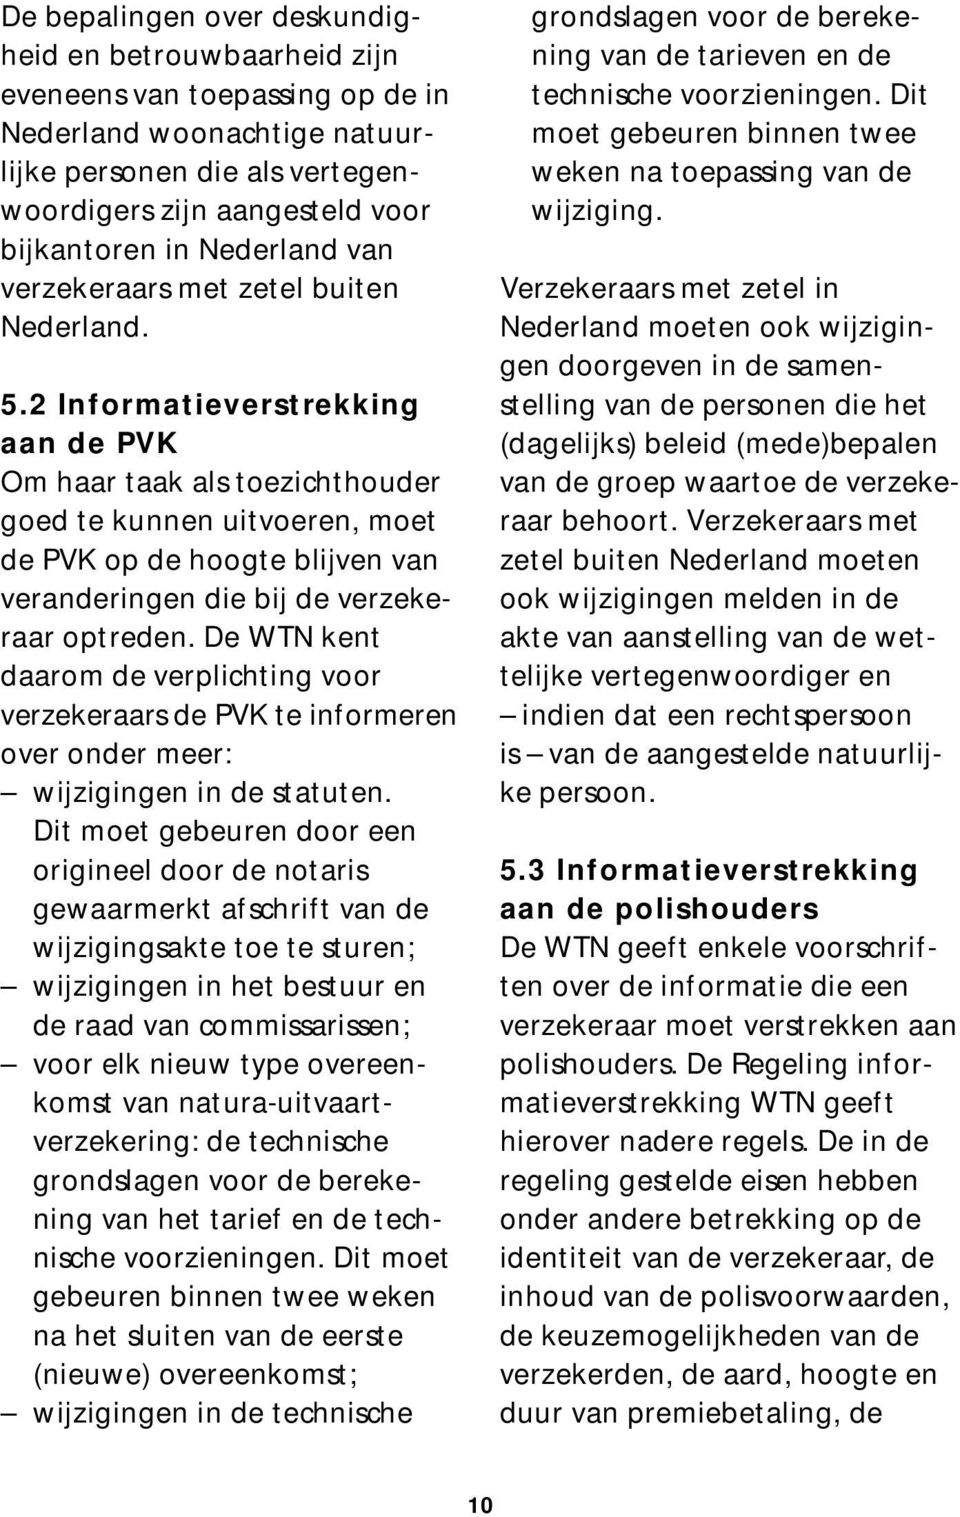 2 Informatieverstrekking aan de PVK Om haar taak als toezichthouder goed te kunnen uitvoeren, moet de PVK op de hoogte blijven van veranderingen die bij de verzekeraar optreden.